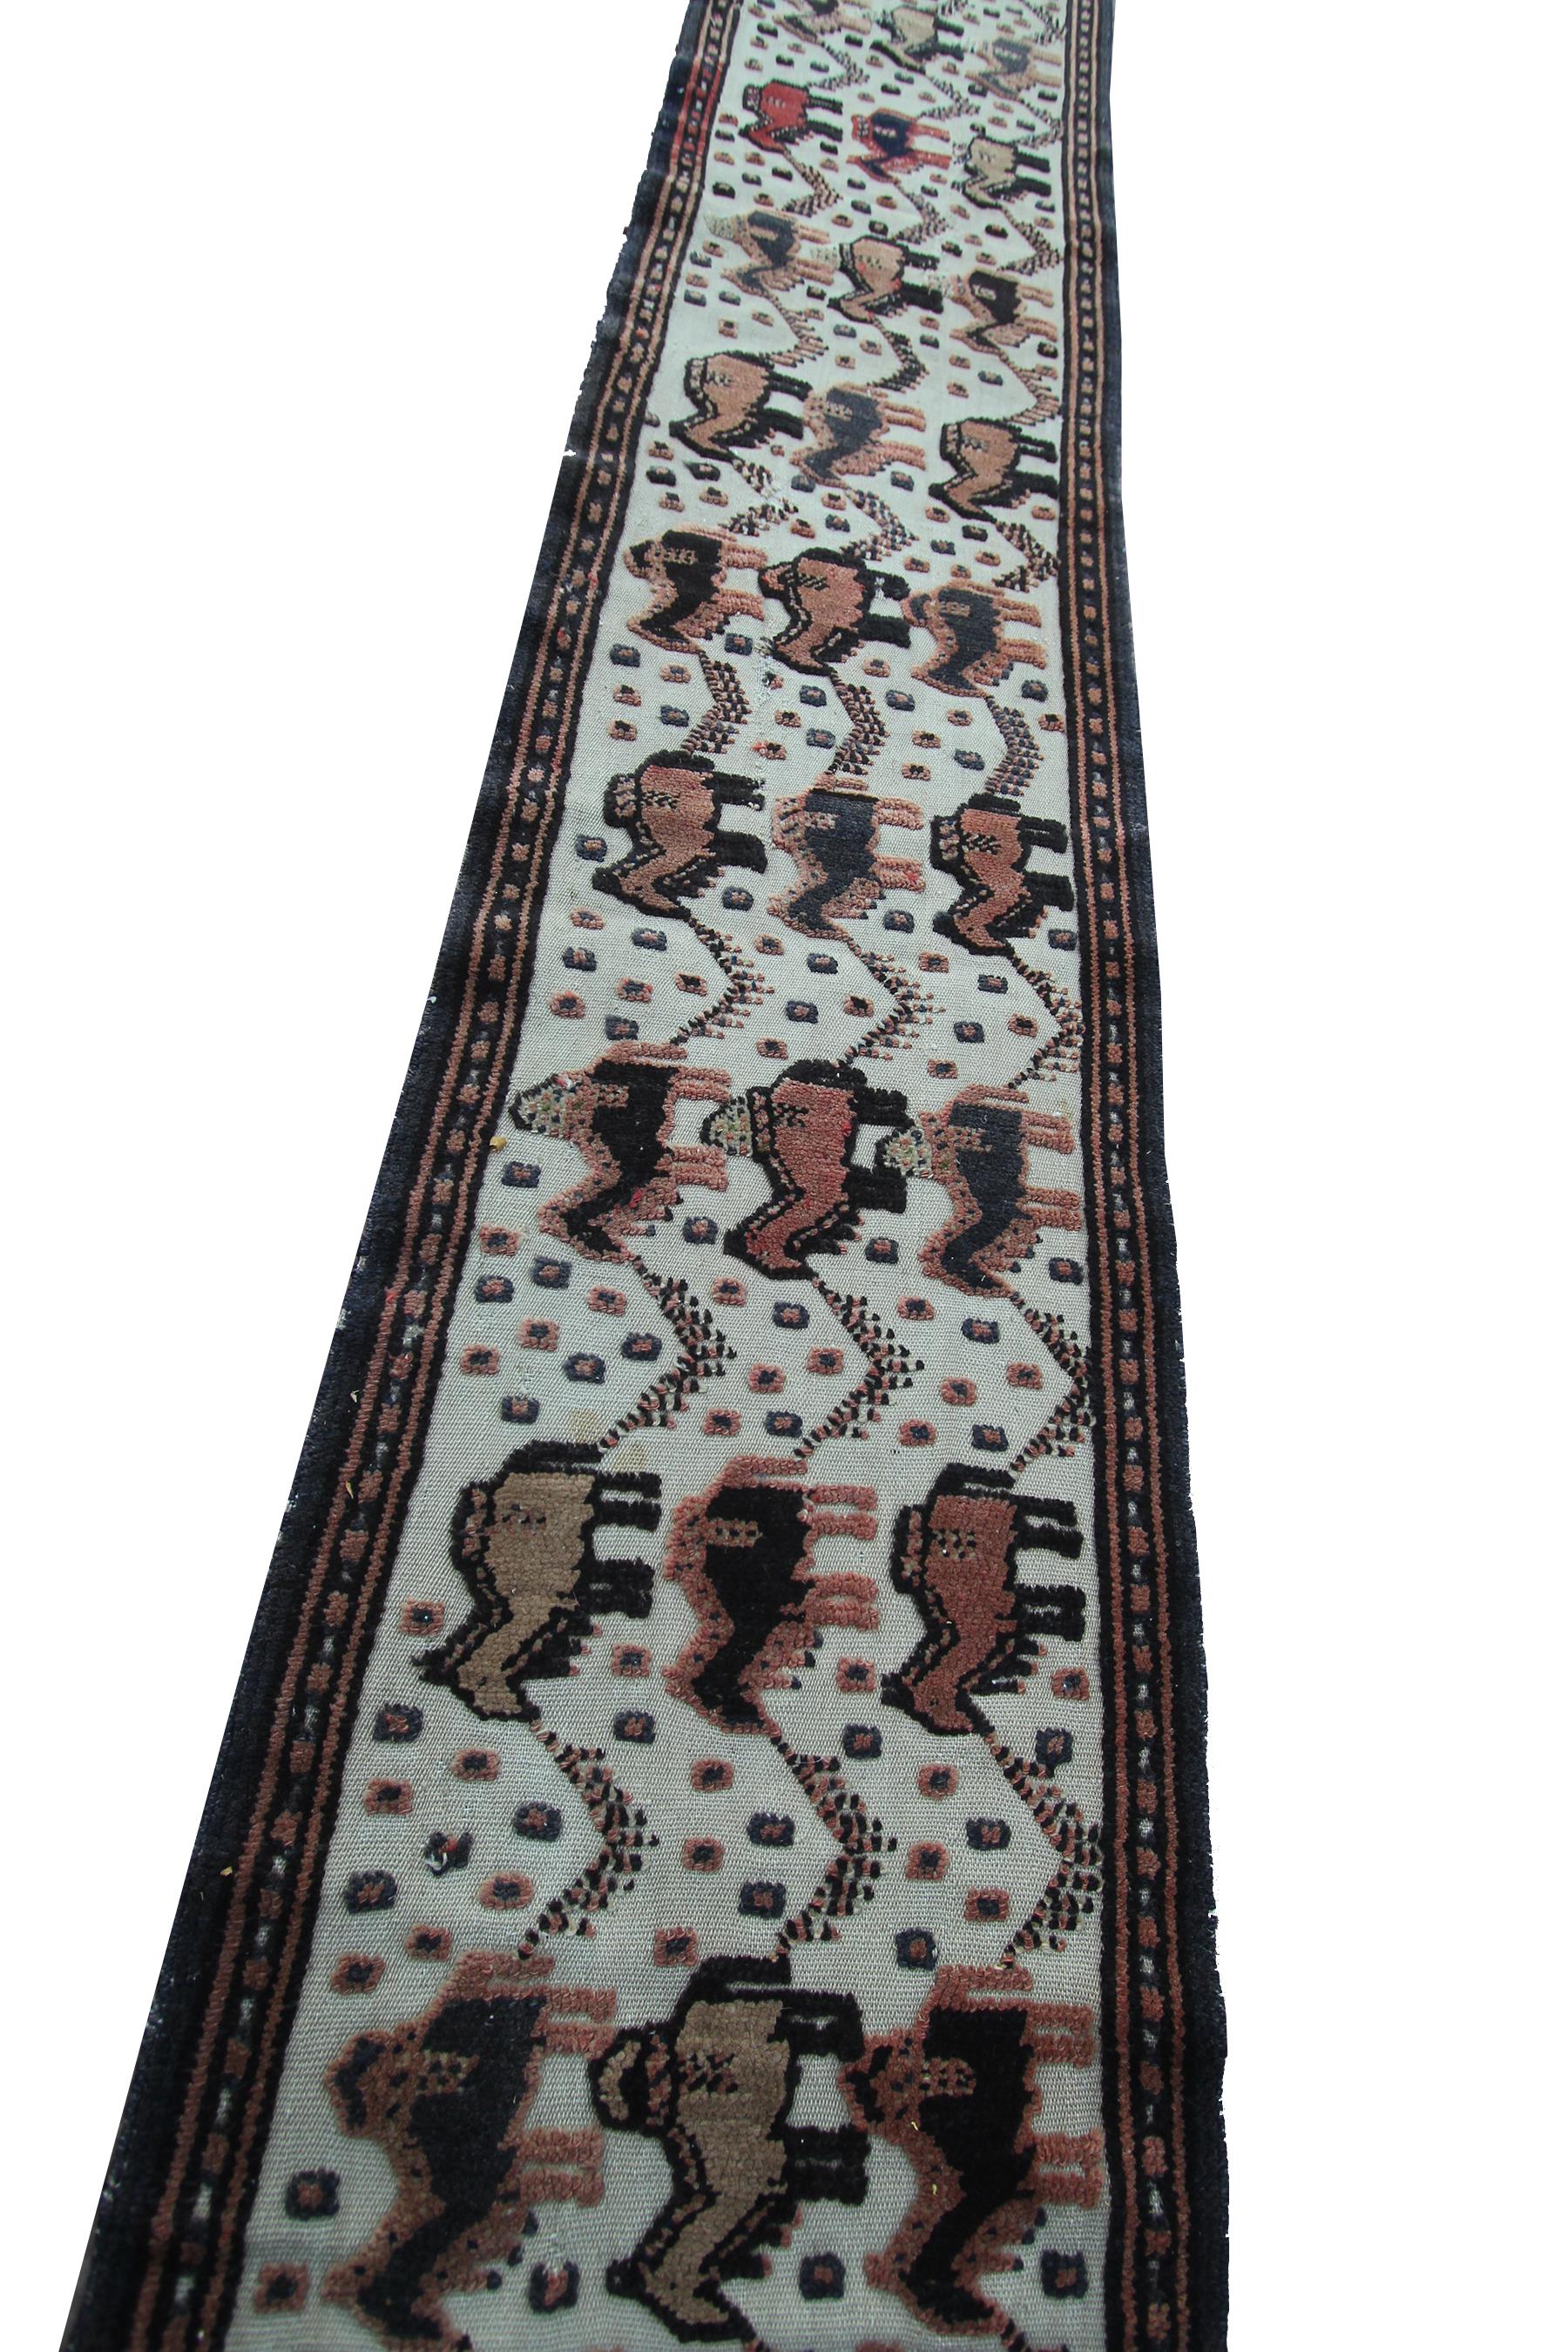 Wool 1890 Antique Tapestry Handmade Persian Runner Senneh Animal Design For Sale